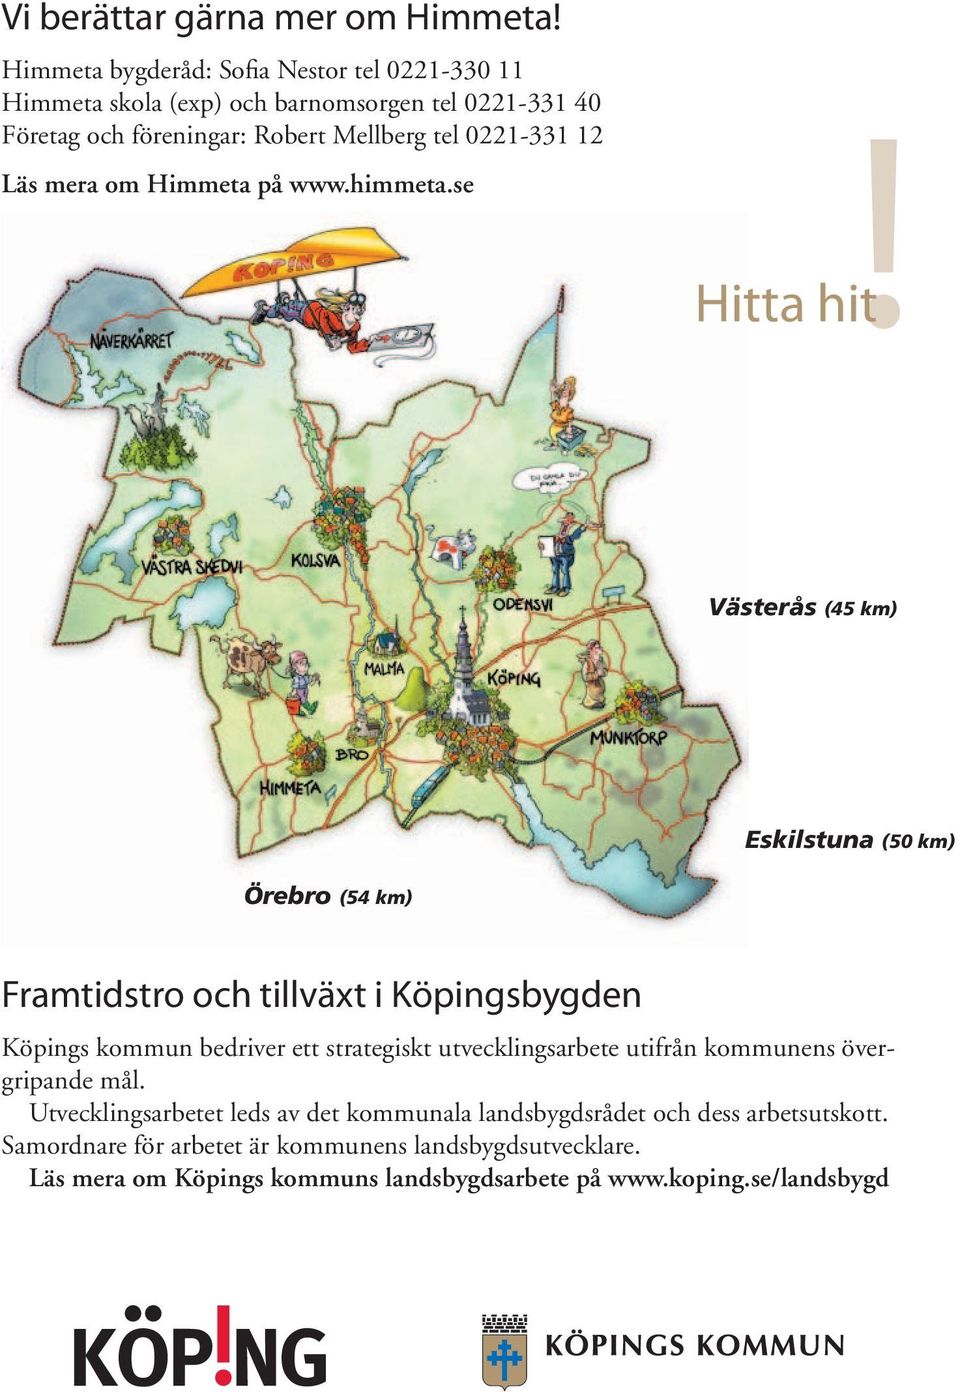 Läs mera om Himmeta på www.himmeta.se!